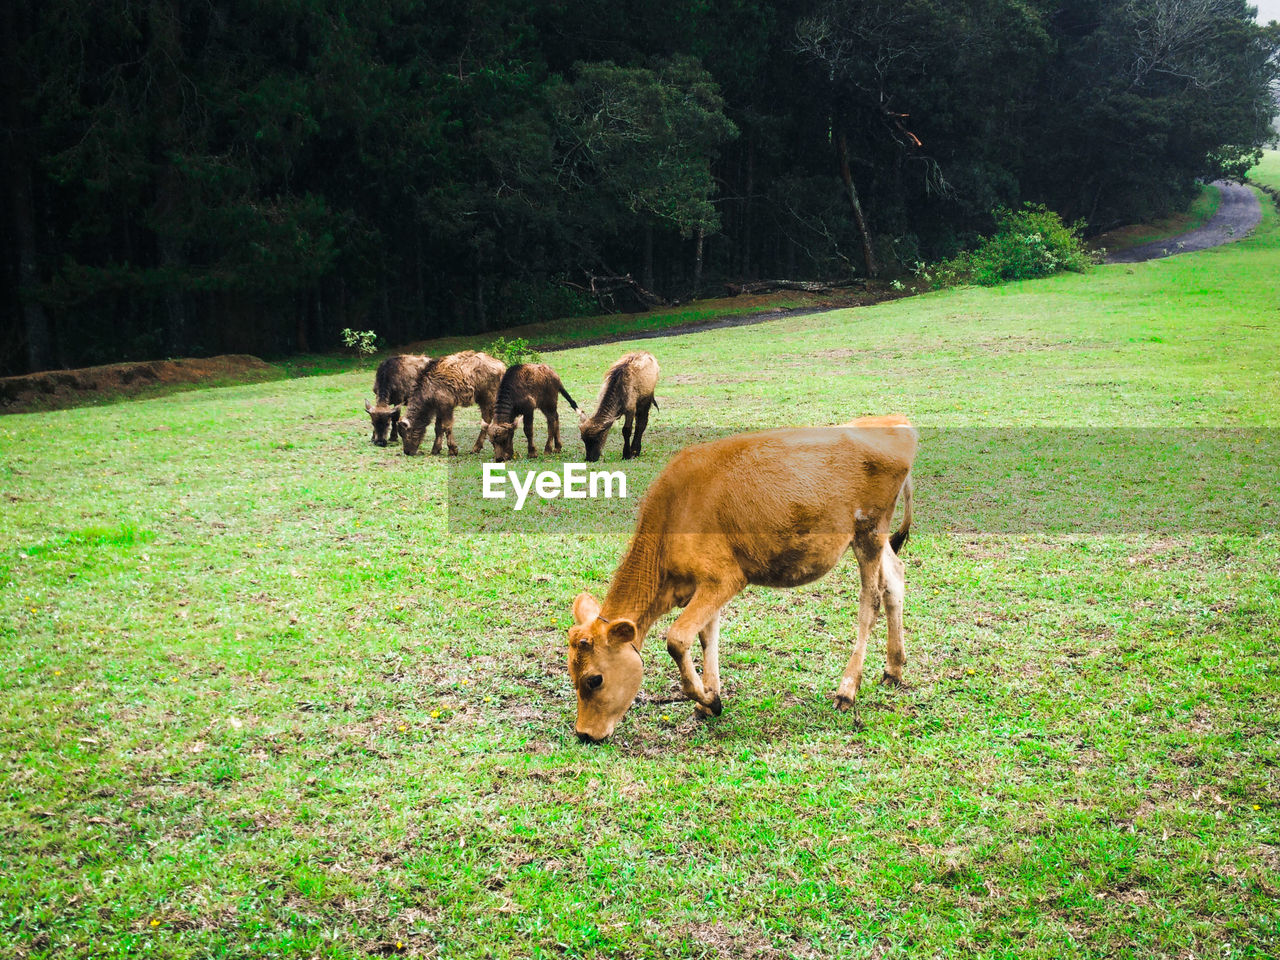 Calves grazing on grassy field against trees